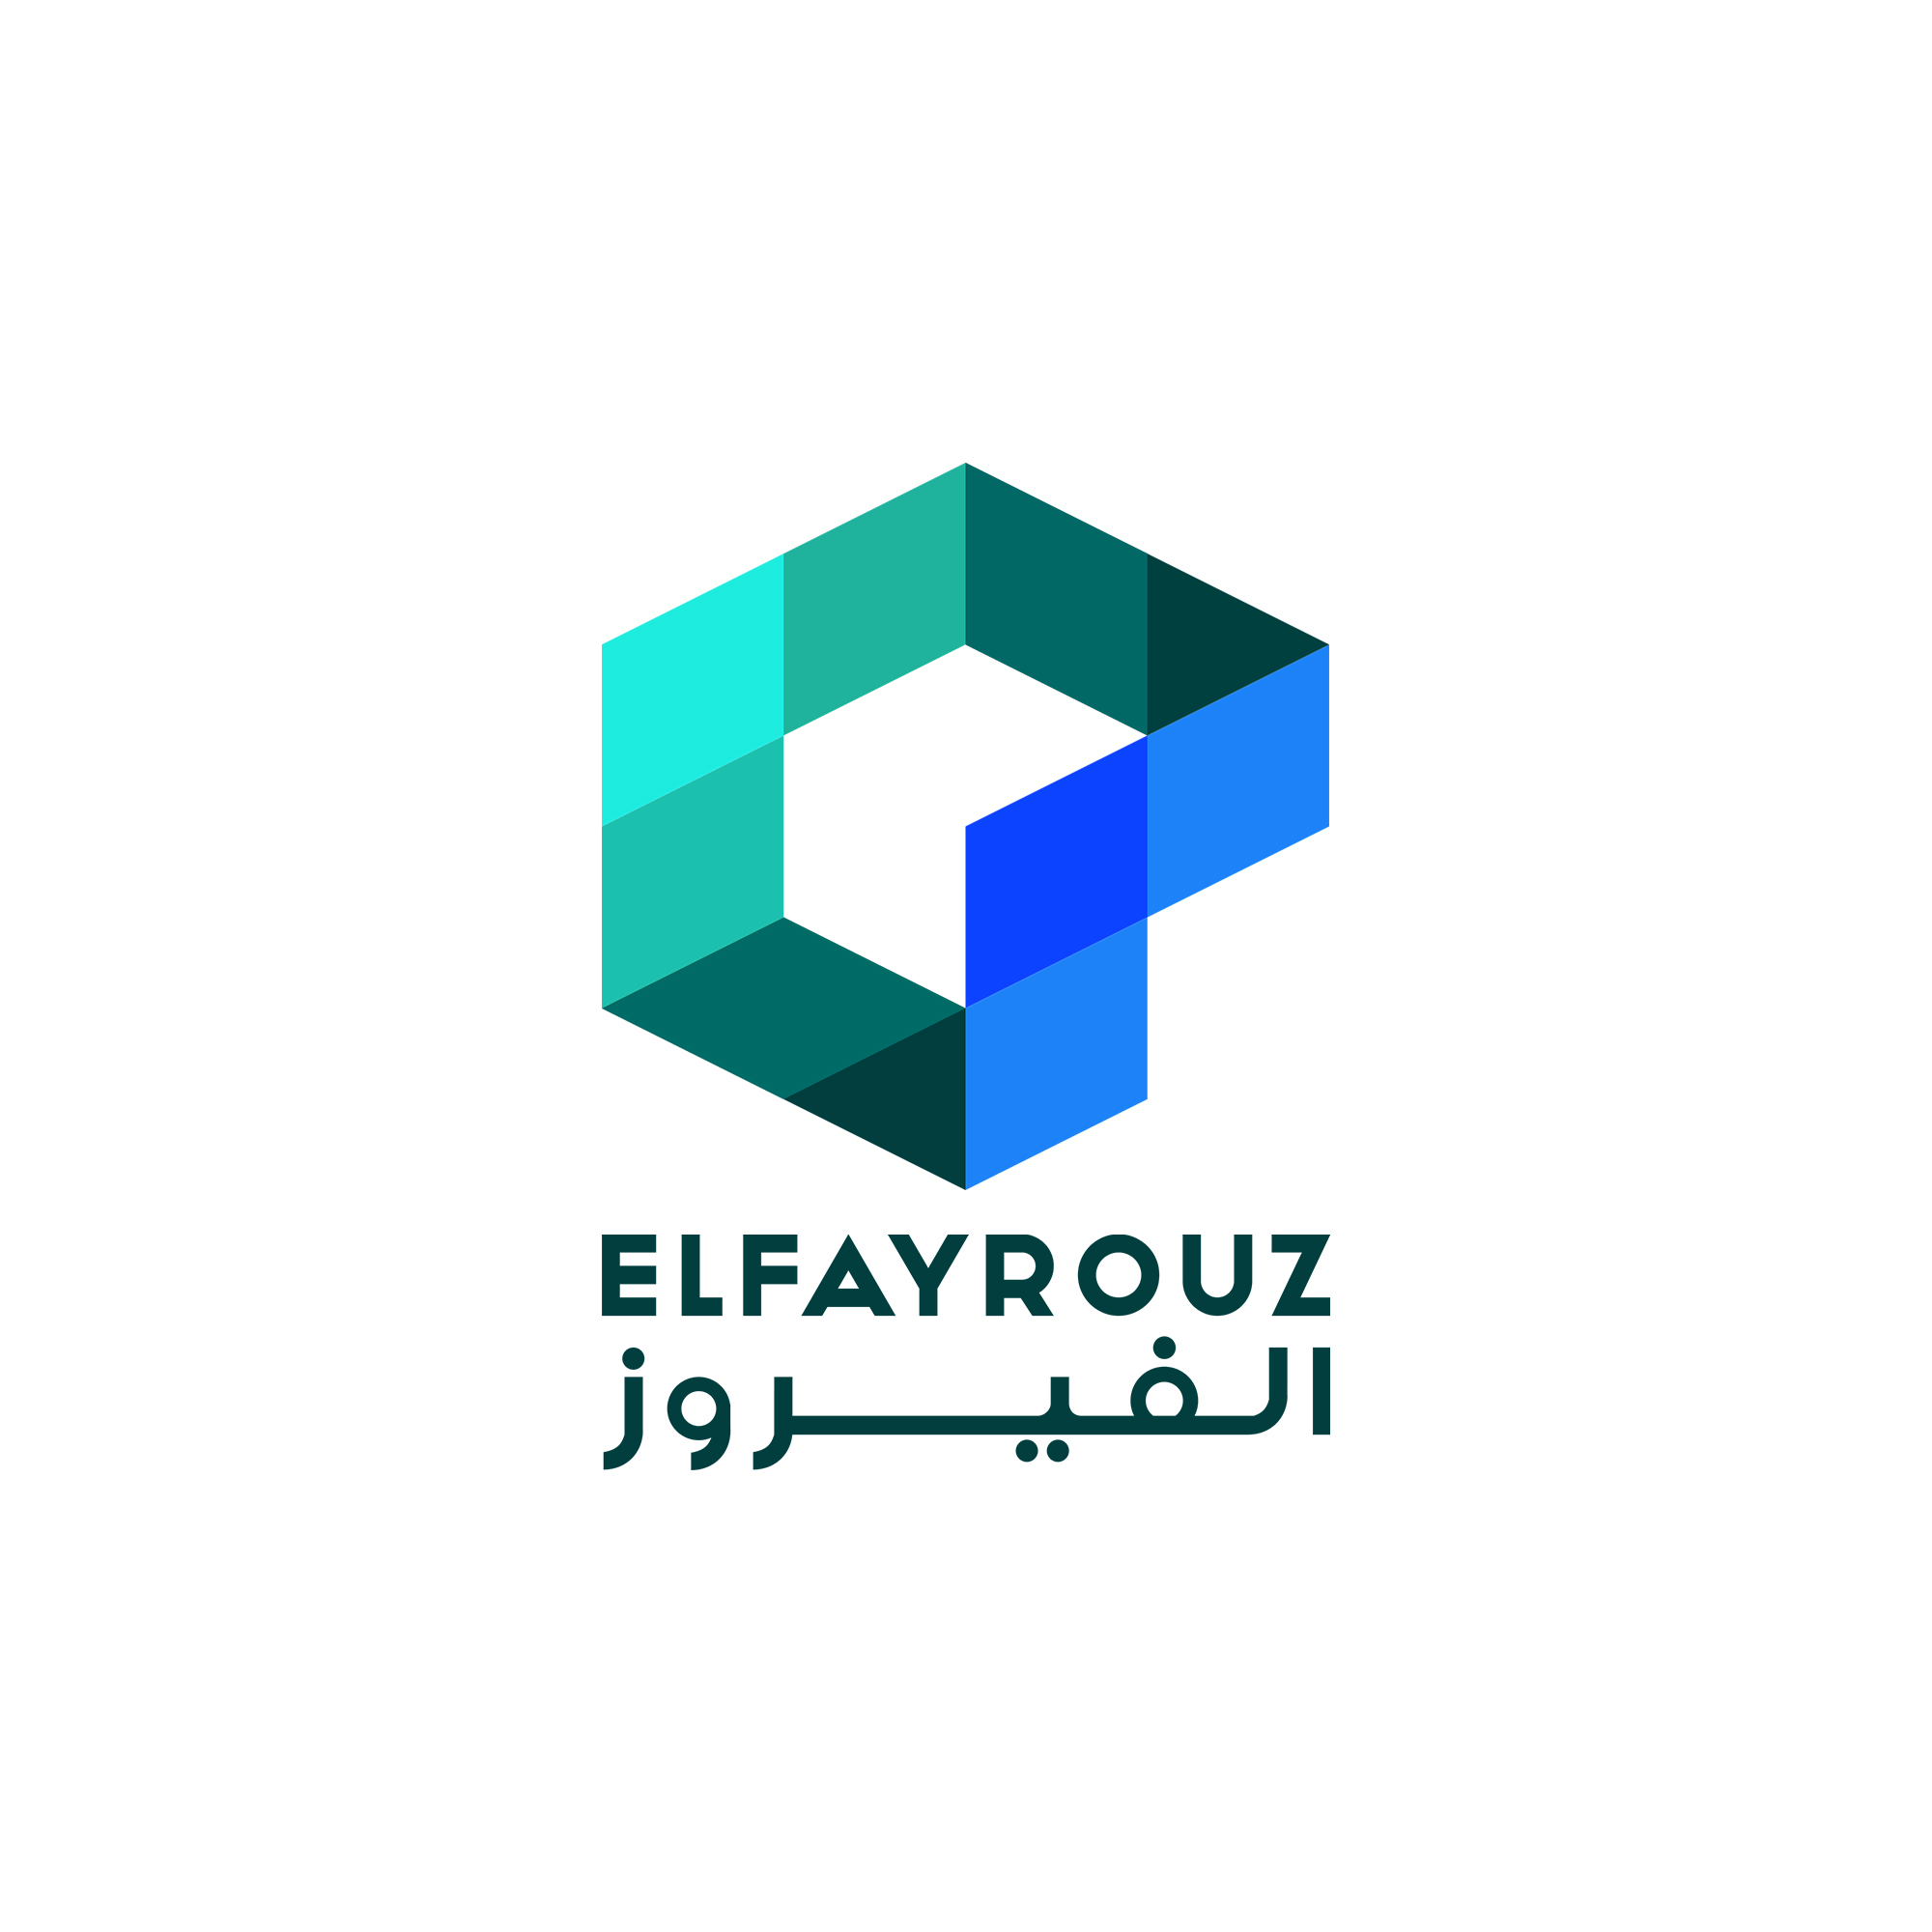 El-fayrouz - logo (2)